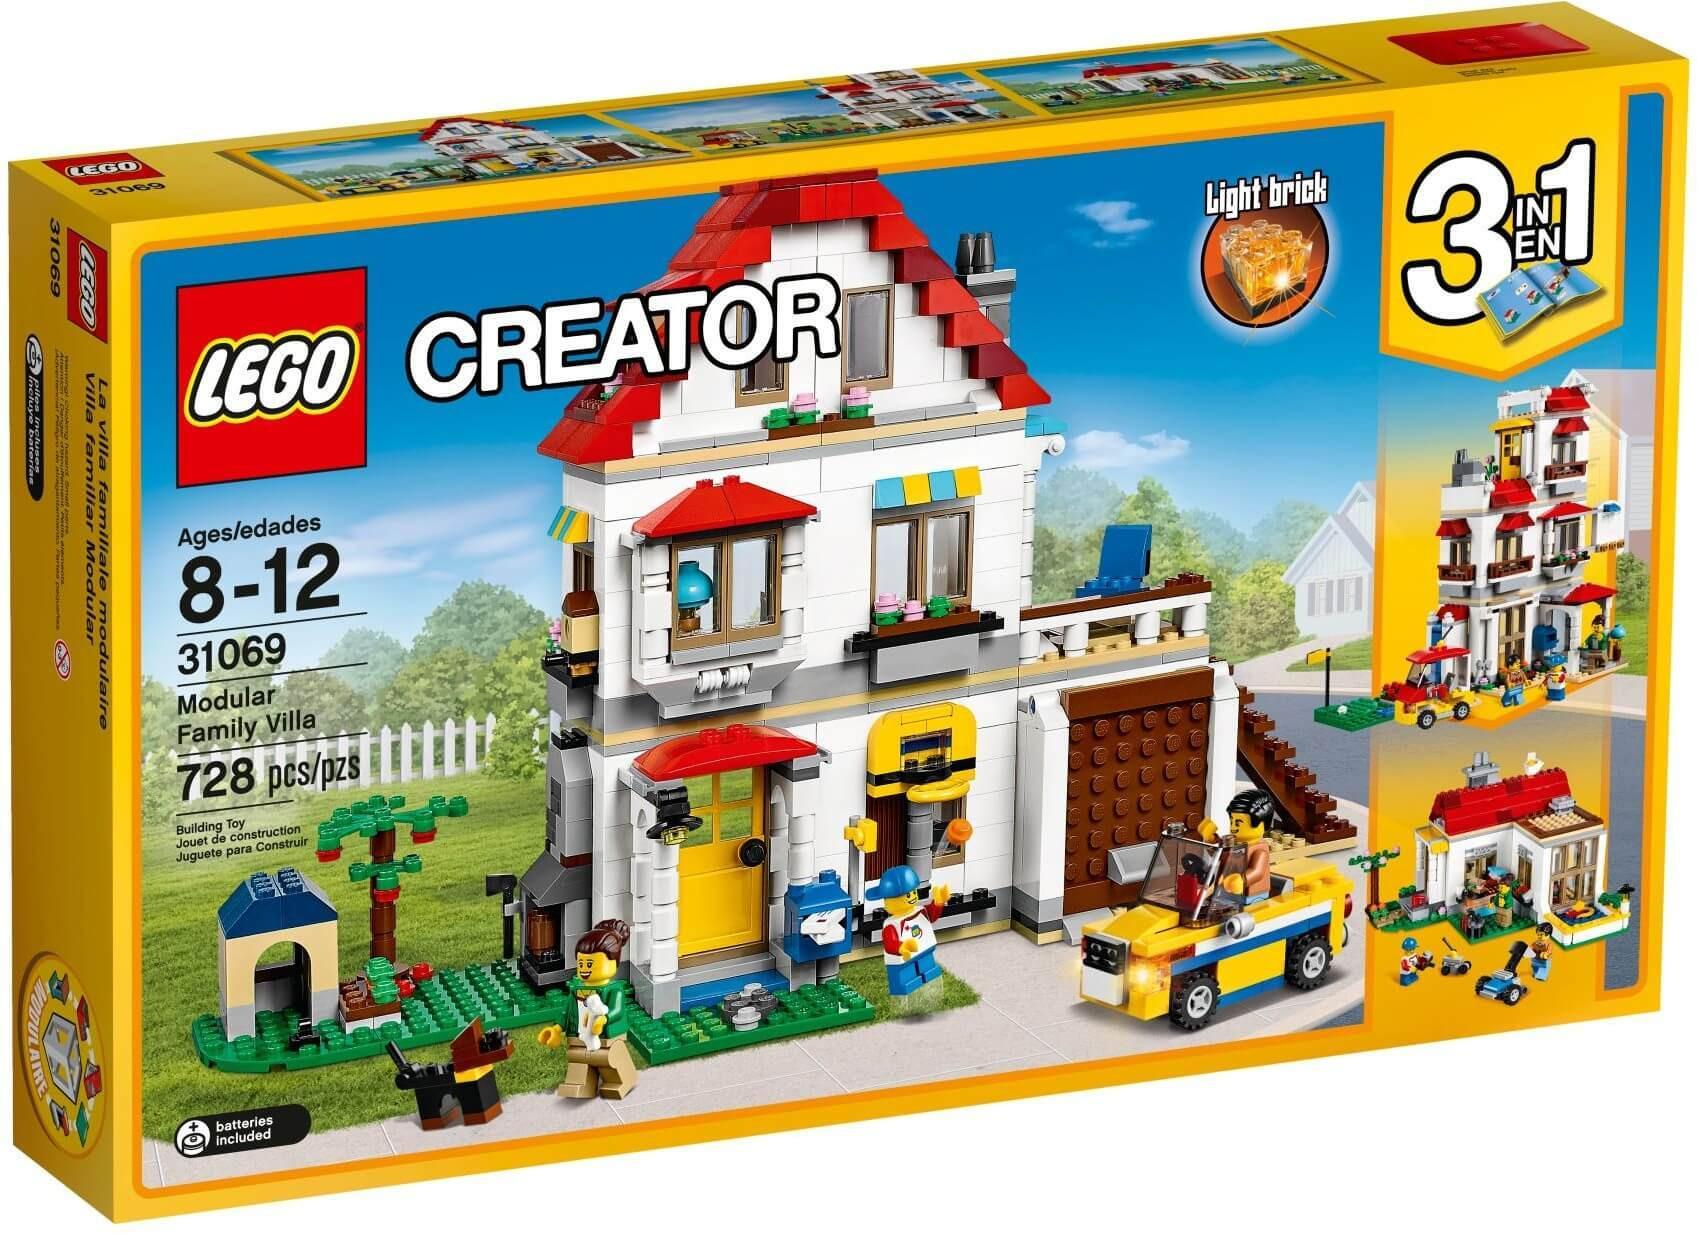 Đồ chơi mô hình Lego Creator - Biệt thự nghỉ dưỡng gia đình 31069 (728 chi tiết)